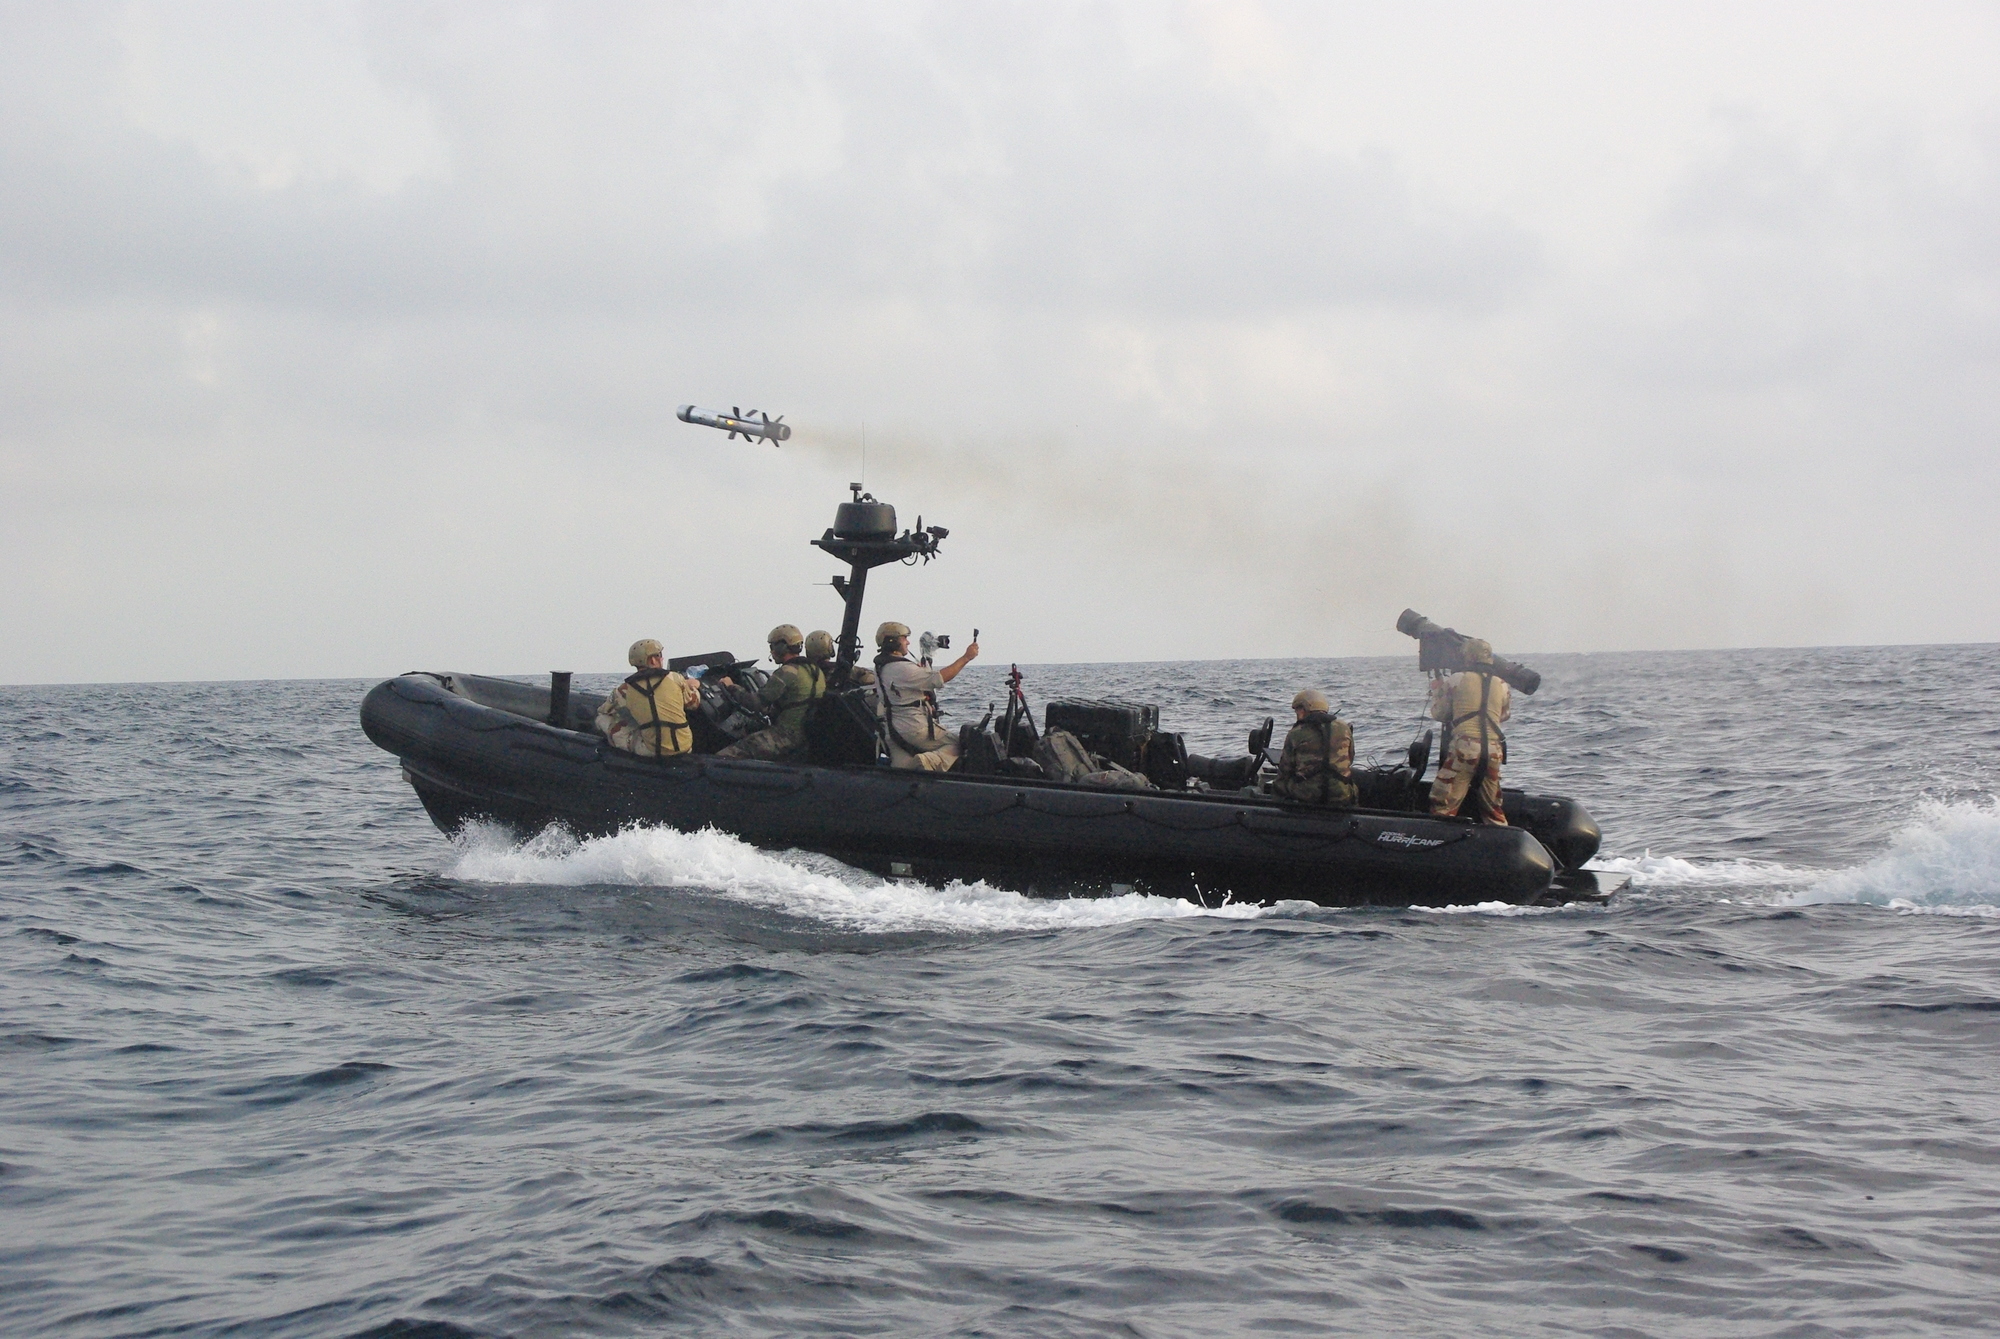 Des commandos-marine lancent un missile à moyenne portée (MMP) depuis la mer